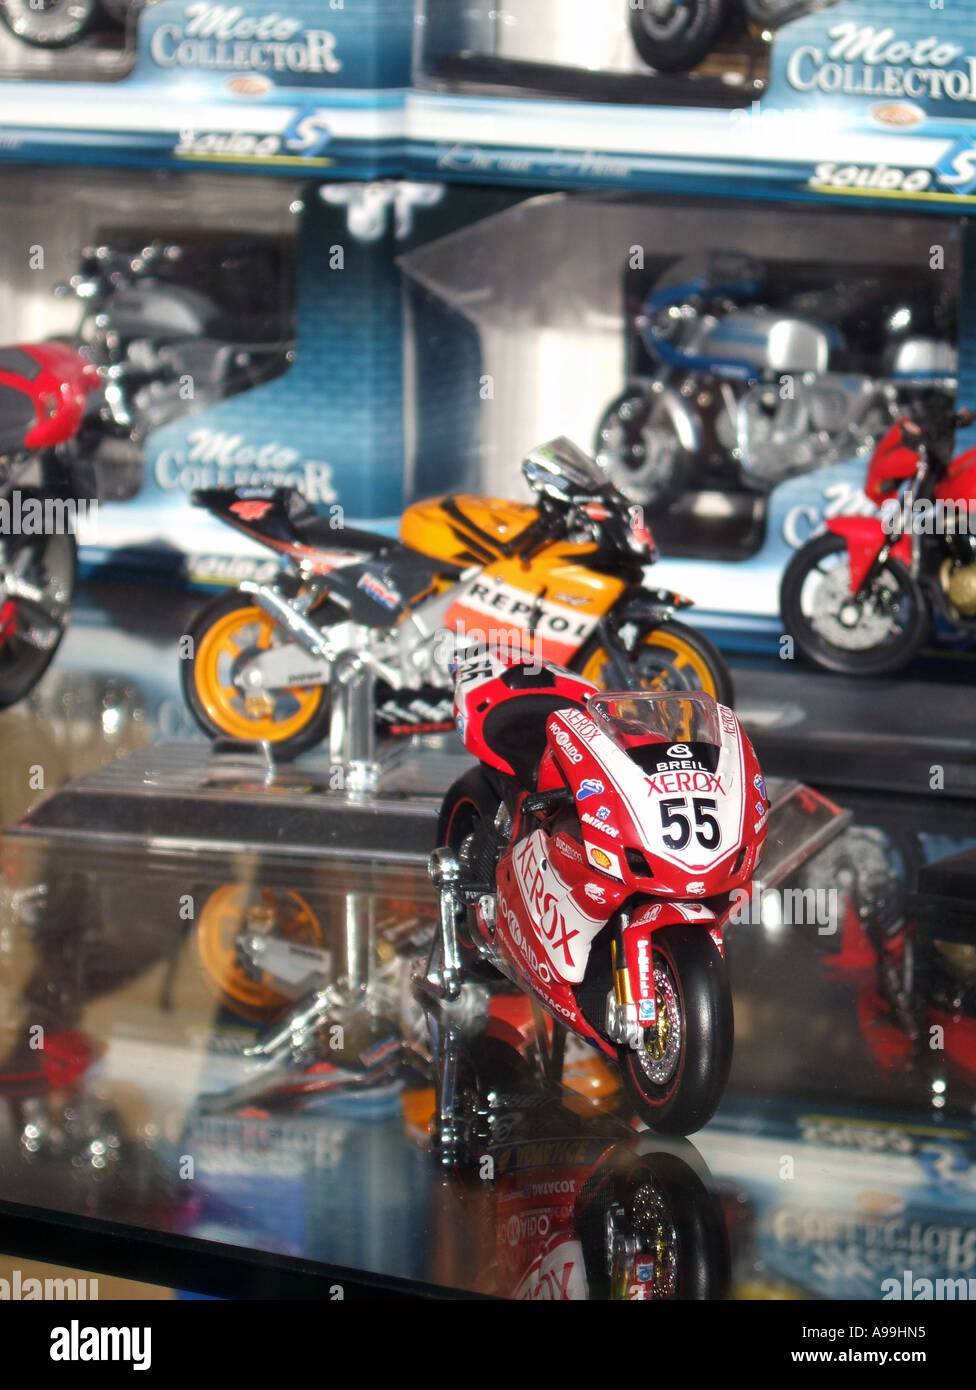 Motos de carreras de GP juguetes en miniatura en escaparate Fotografía de  stock - Alamy